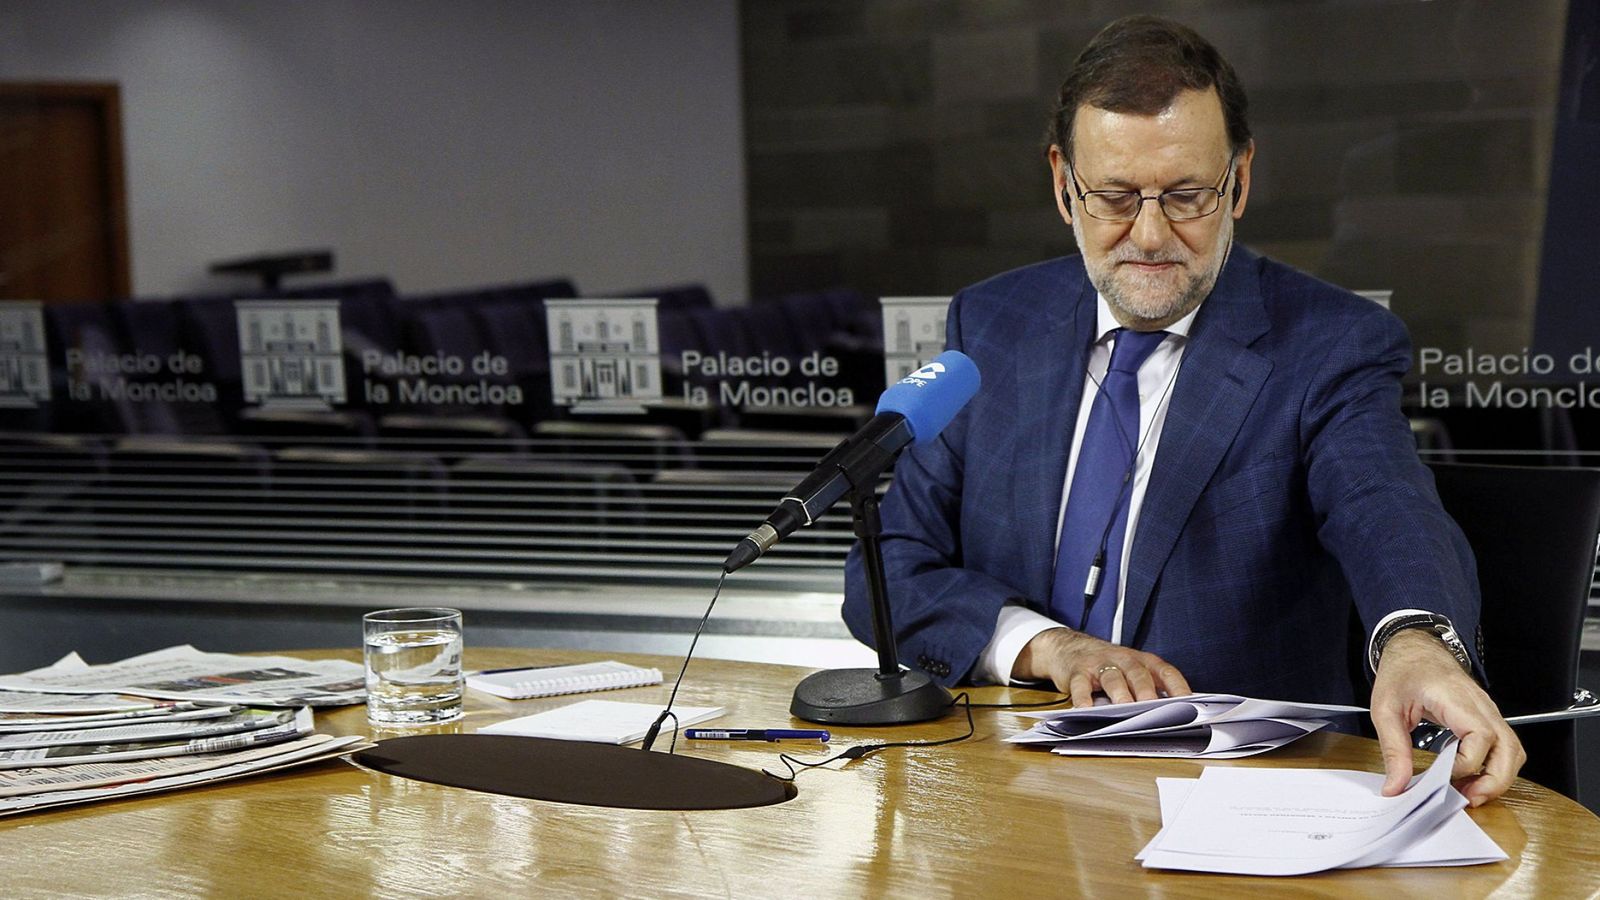 Foto: El presidente del Gobierno, Mariano Rajoy, durante un momento de la entrevista. (EFE)